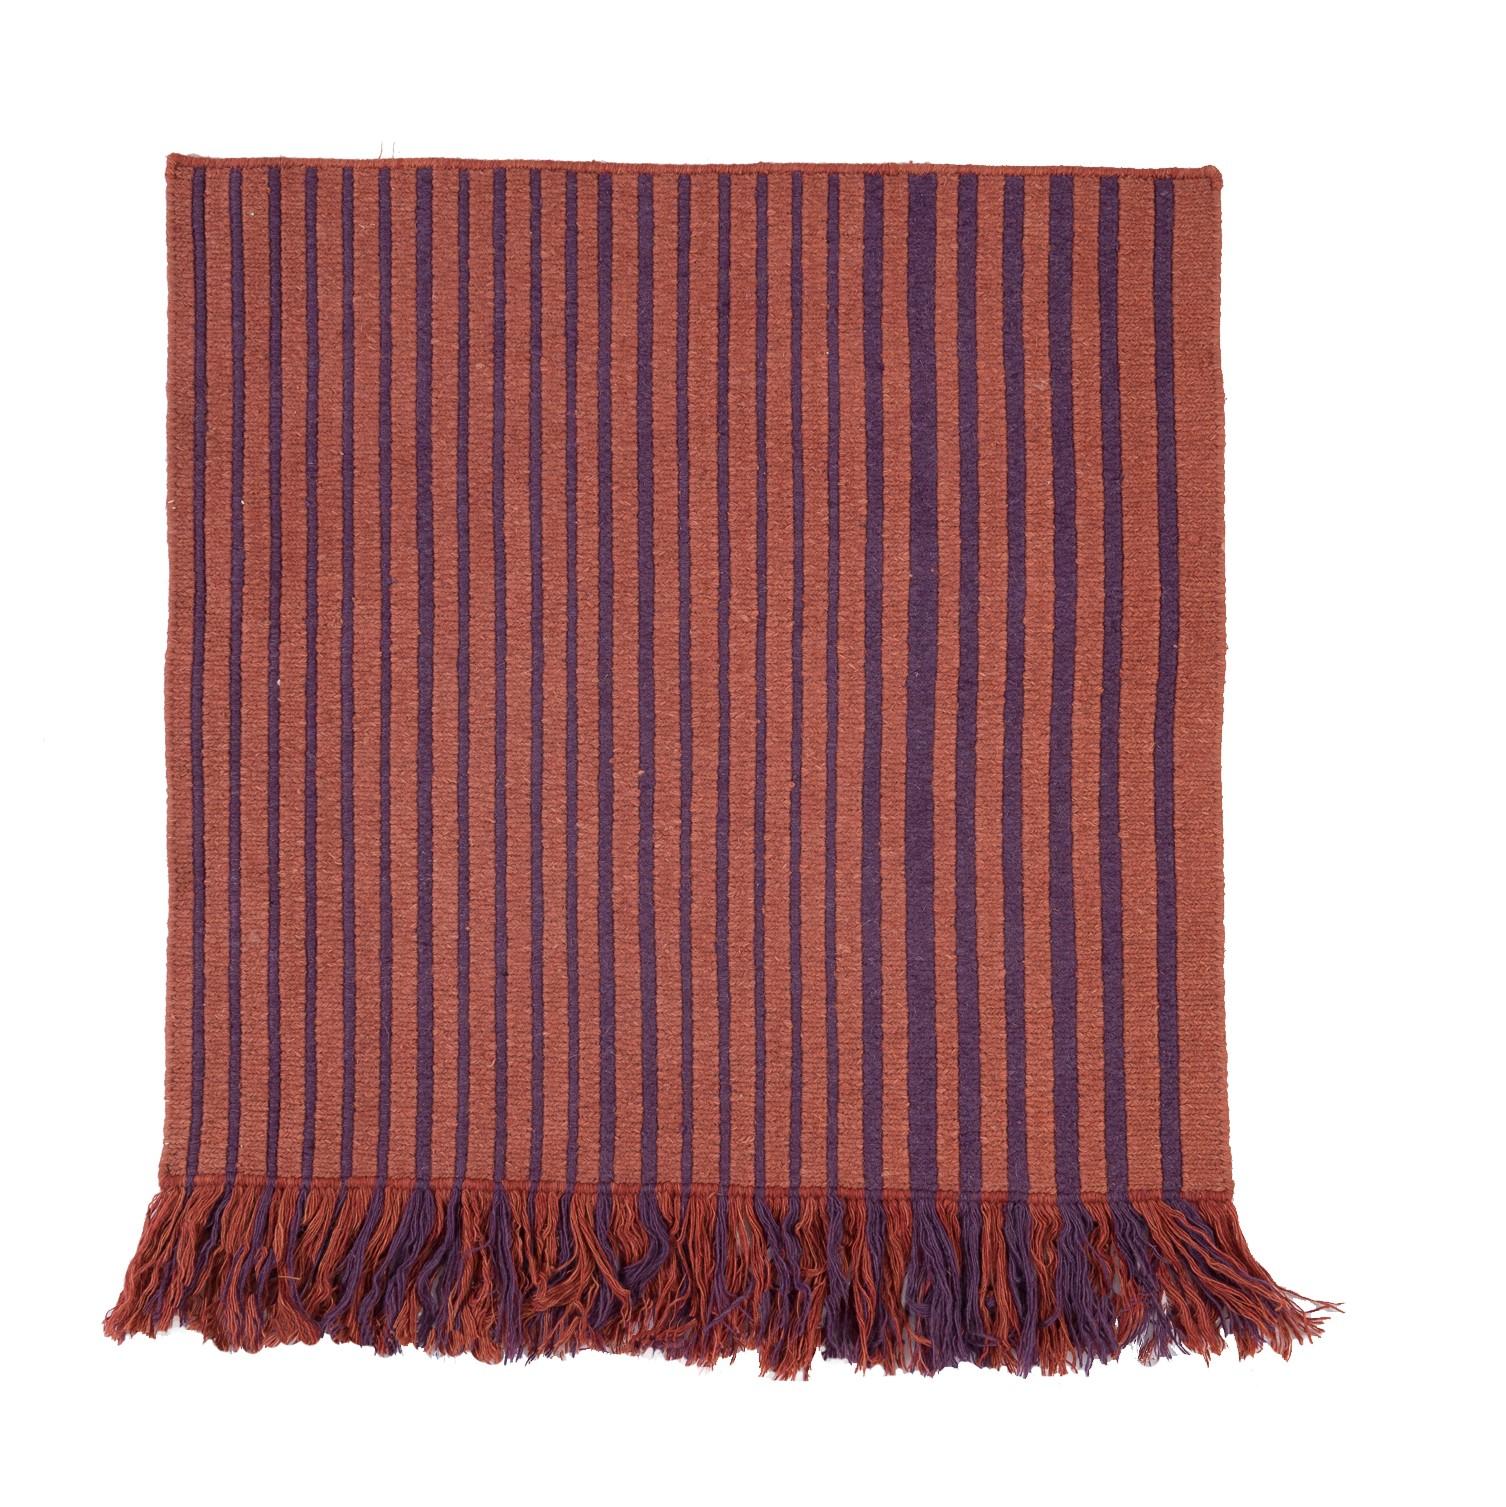 Nr.266 freeplay handgeknüpfter Teppich von Lyk Carpet
Abmessungen: L 90 x B 90 cm.
MATERIALIEN: 100% tibetische Hochlandwolle, handgekämmte und handgesponnene Schurwolle, natürliche pflanzengefärbte Wolle, 100 Knoten pro Quadratzoll.
Handgeknüpfte